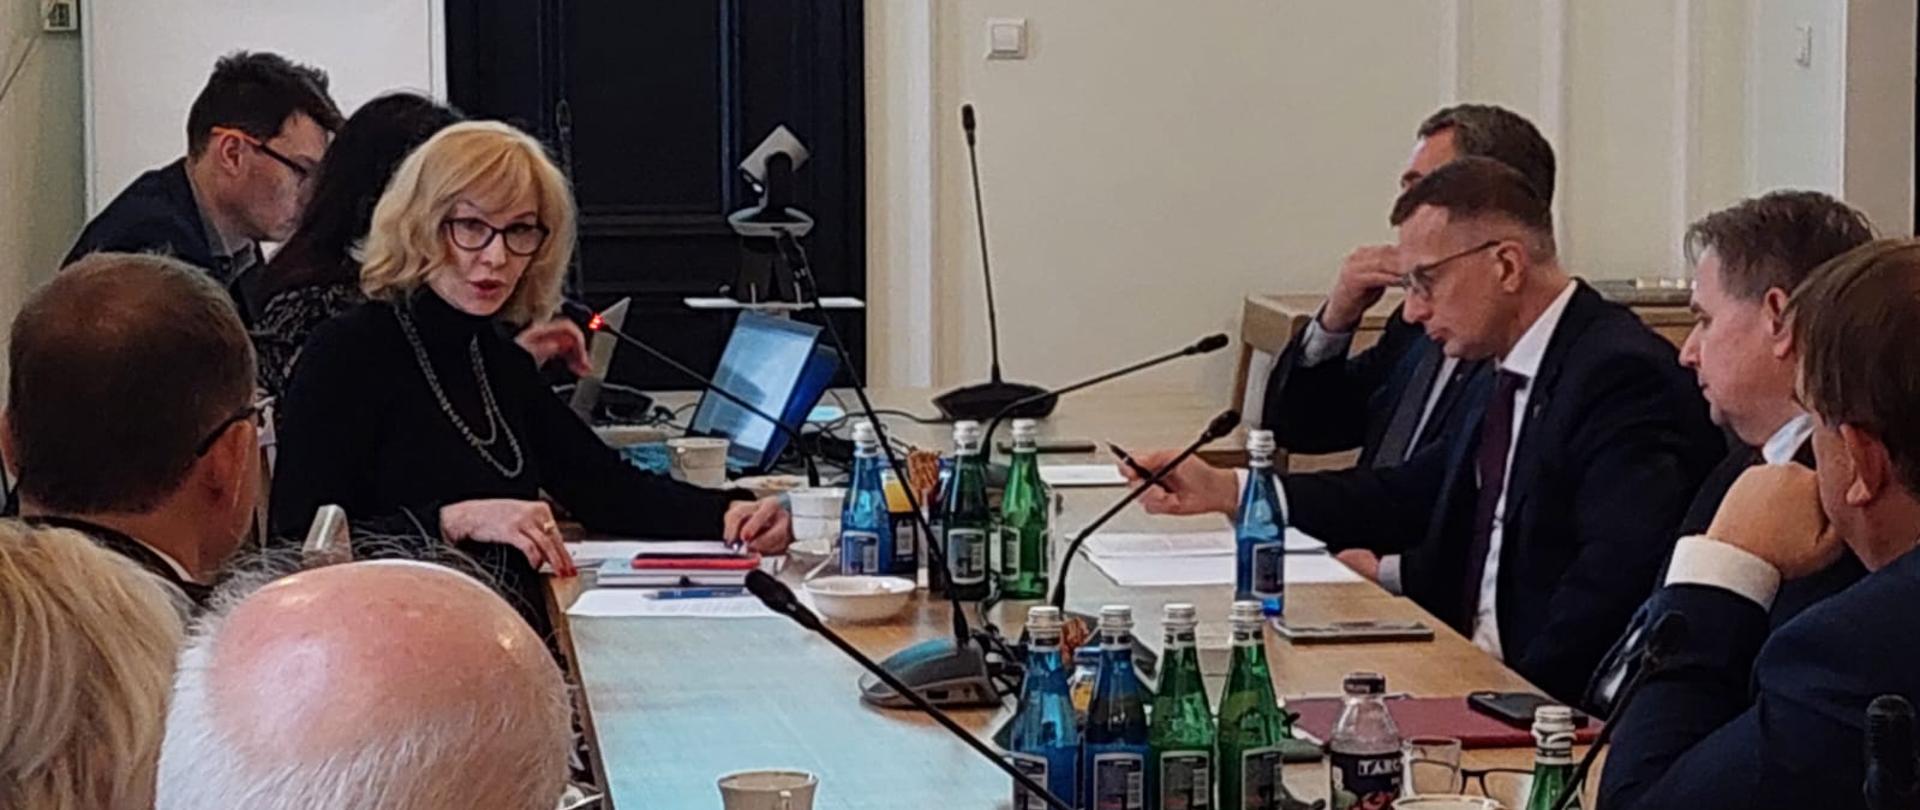 Na zdj. m.in. wiceminister Urszula Demkow na spotkaniu z przedstawicielami KRAUM